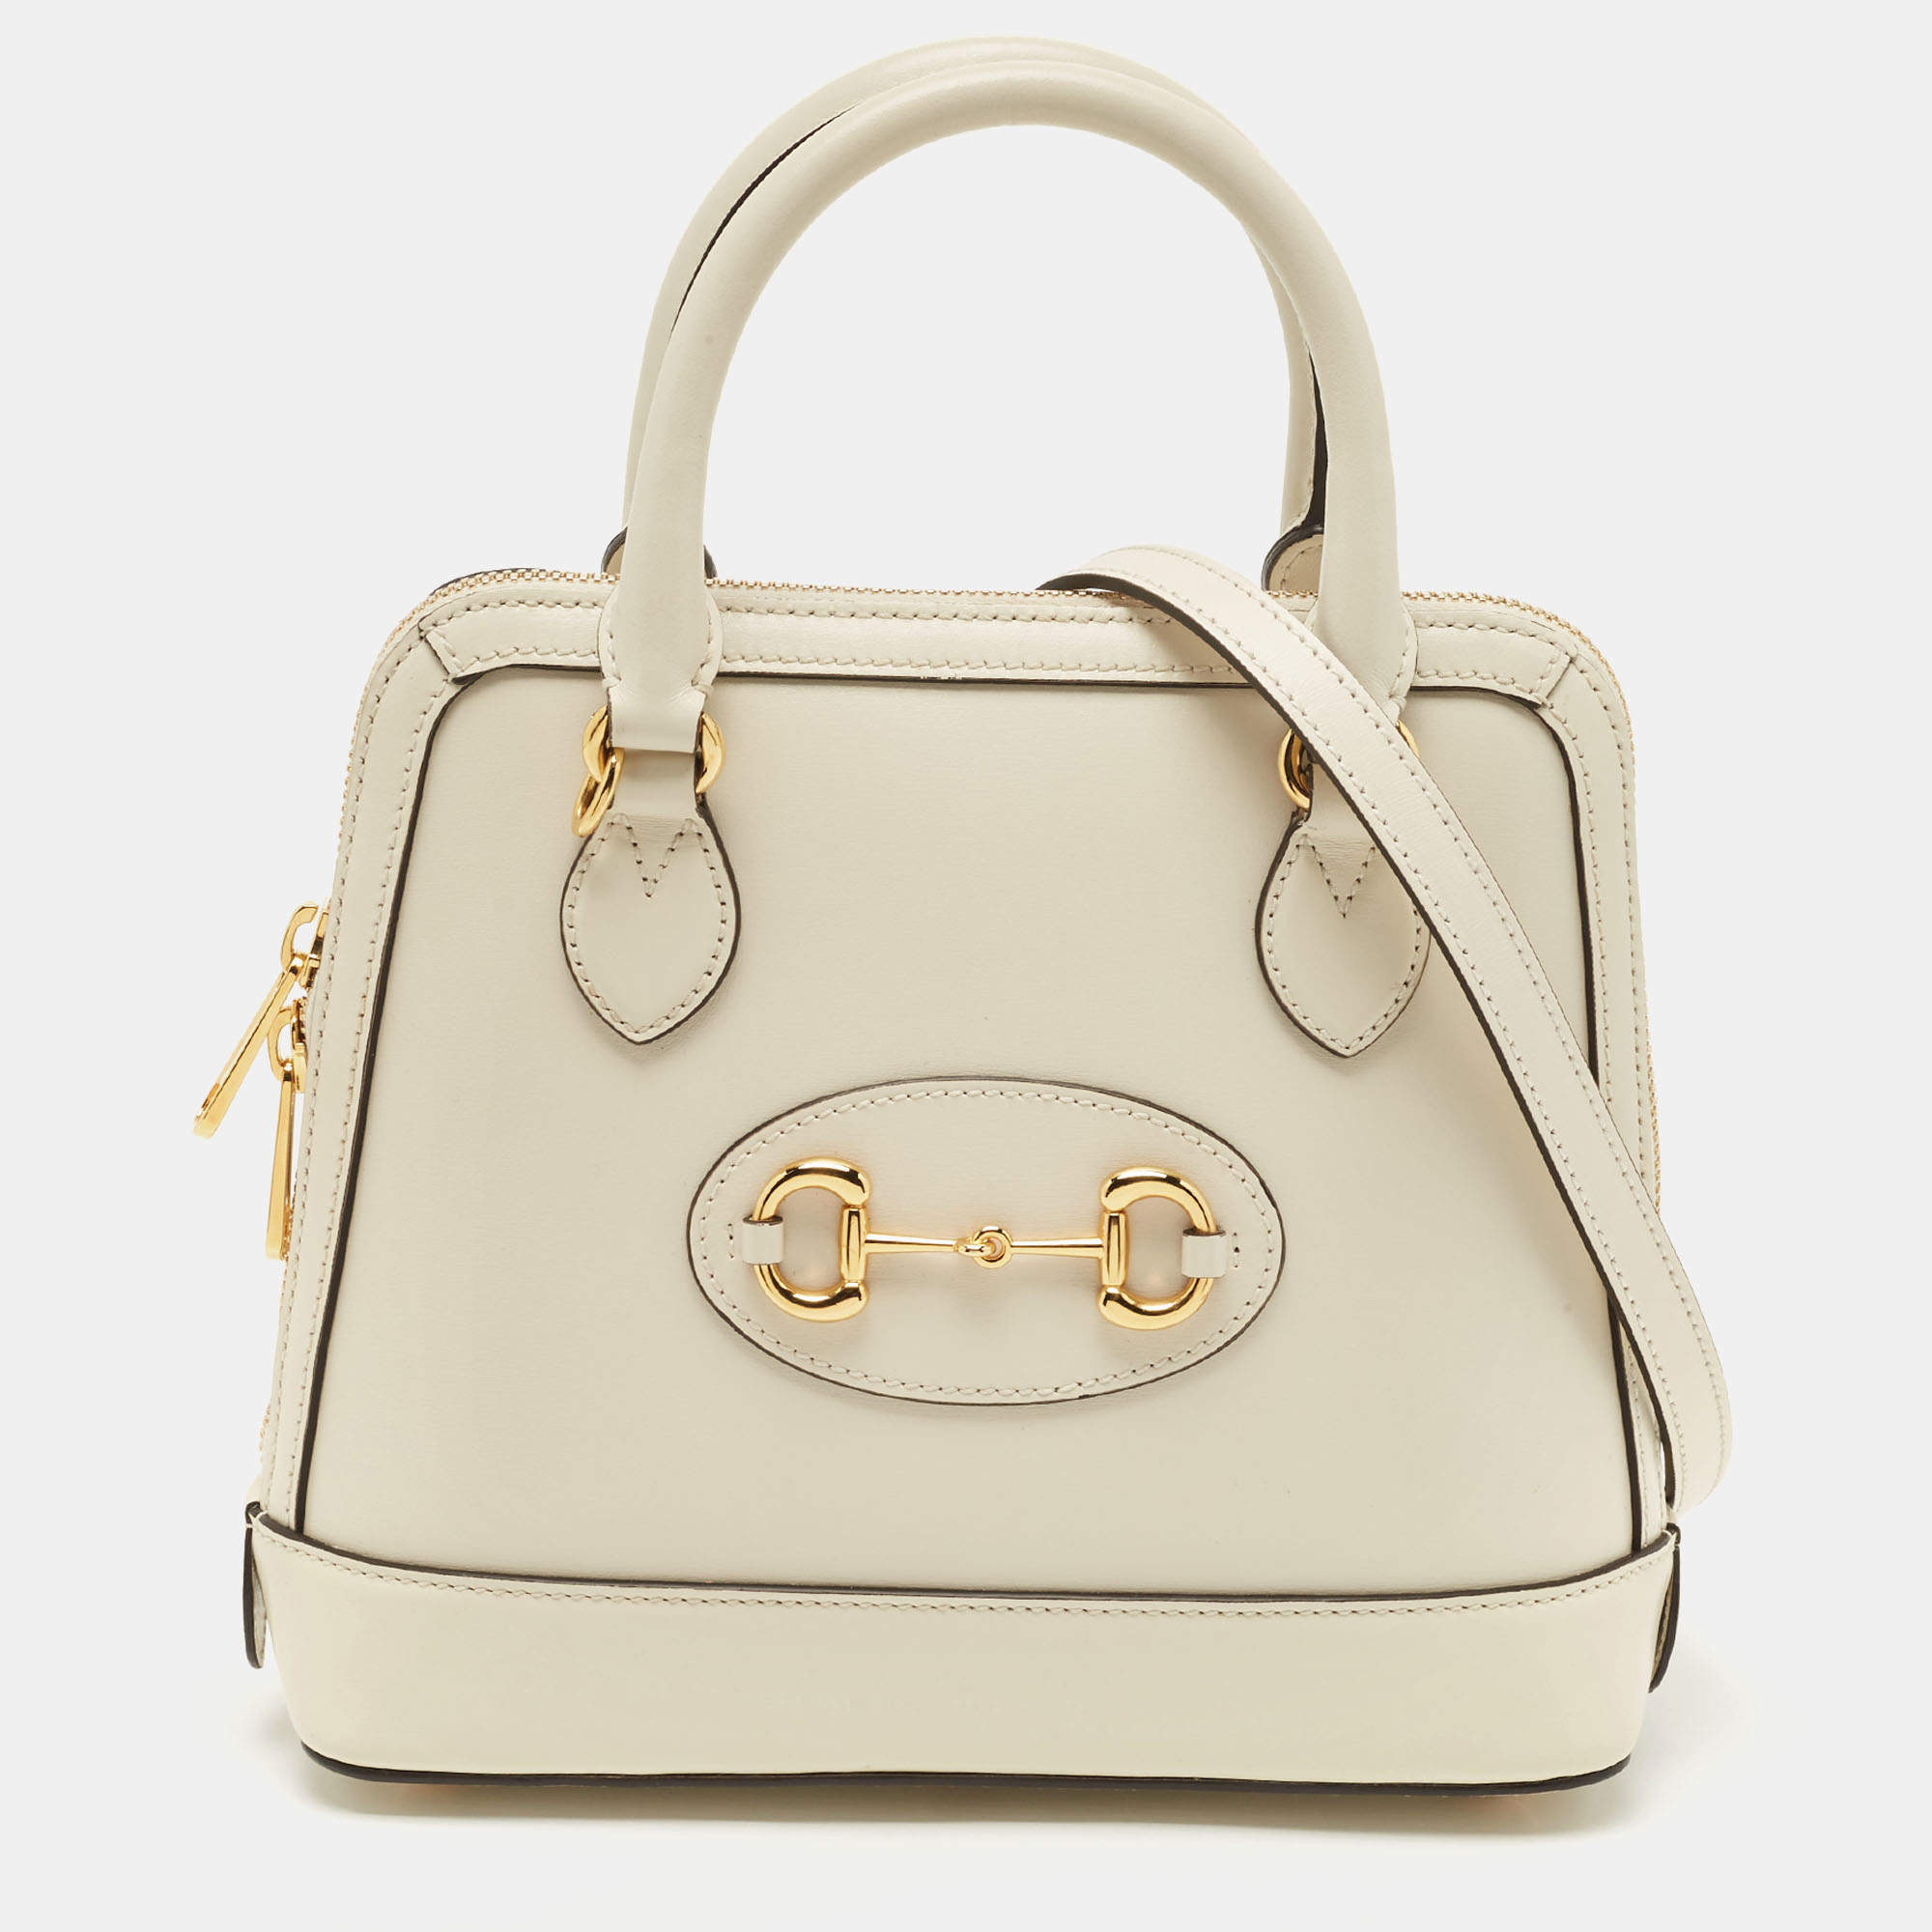 Gucci Horsebit 1955 mini bag for Women - White in Bahrain